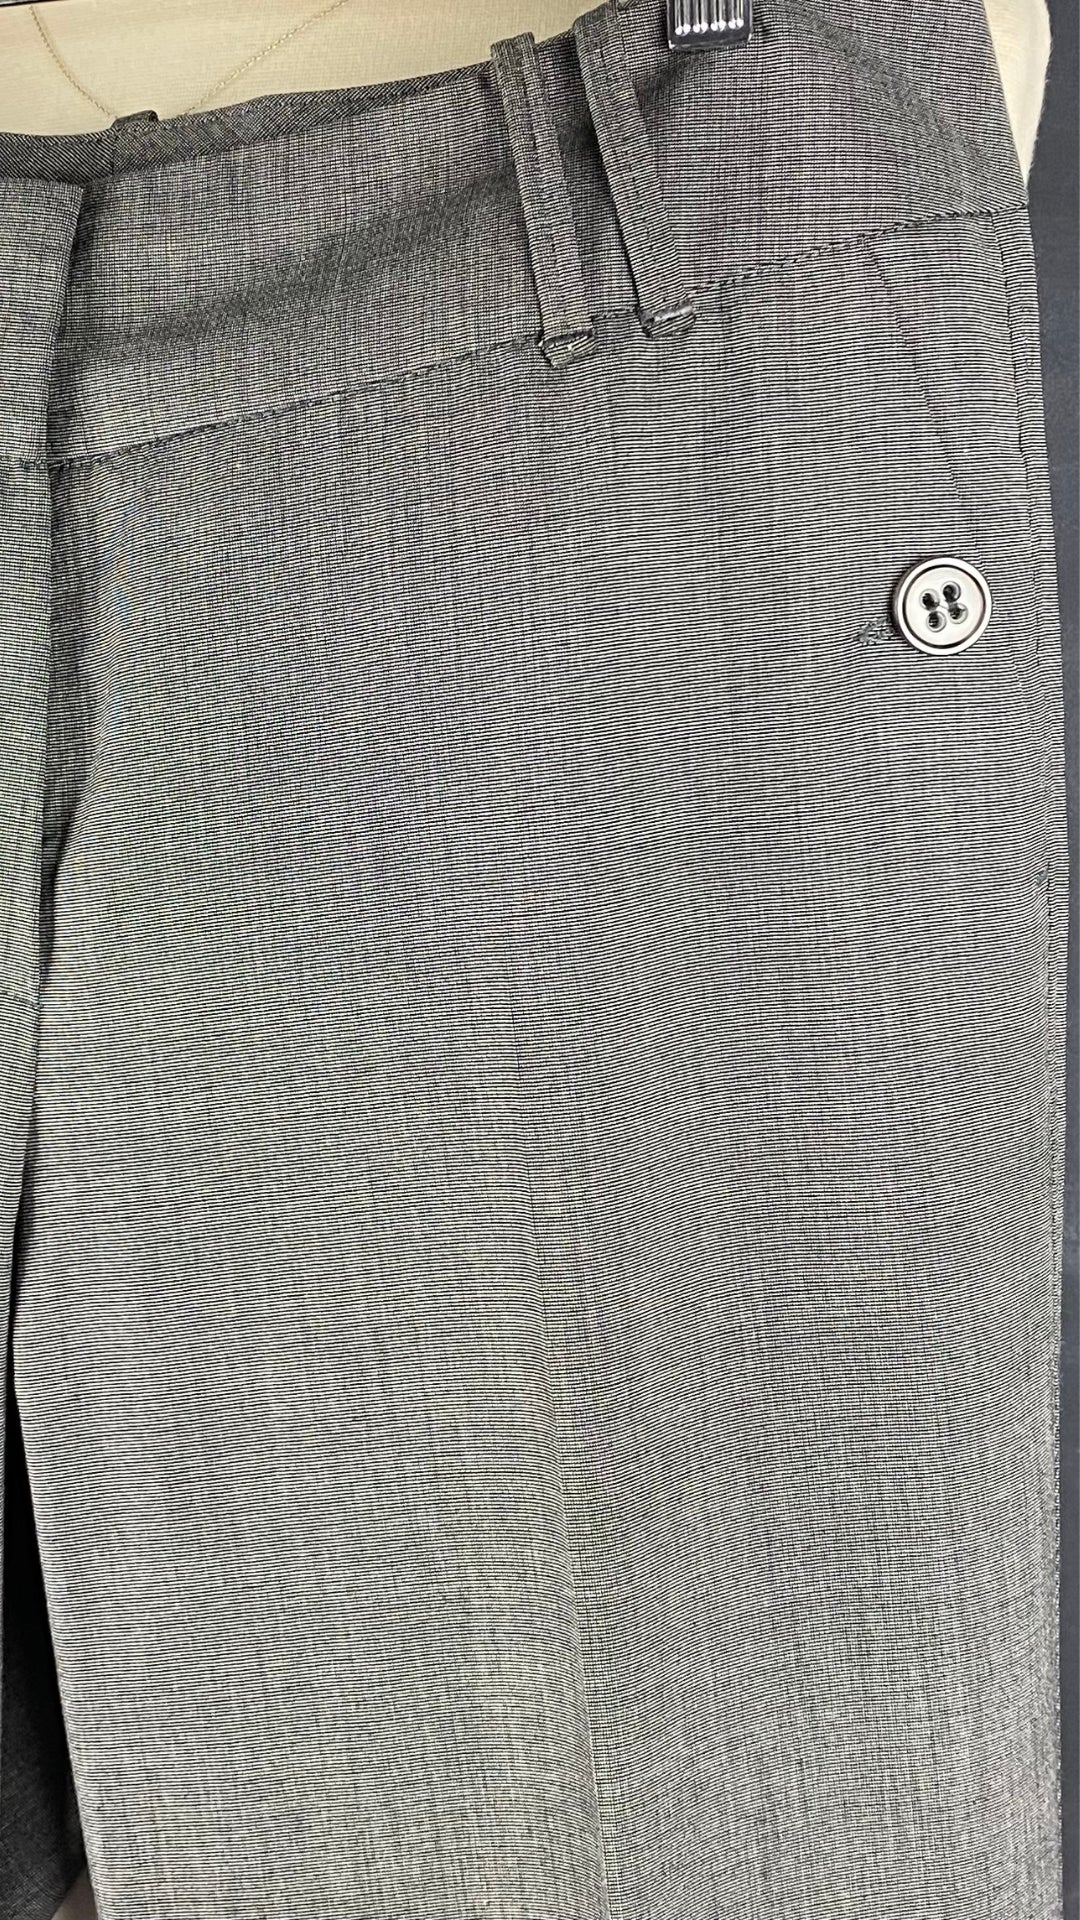 Pantalon gris droit fluide Gardeur, taille estimée à 6. Vue de la poche avant.